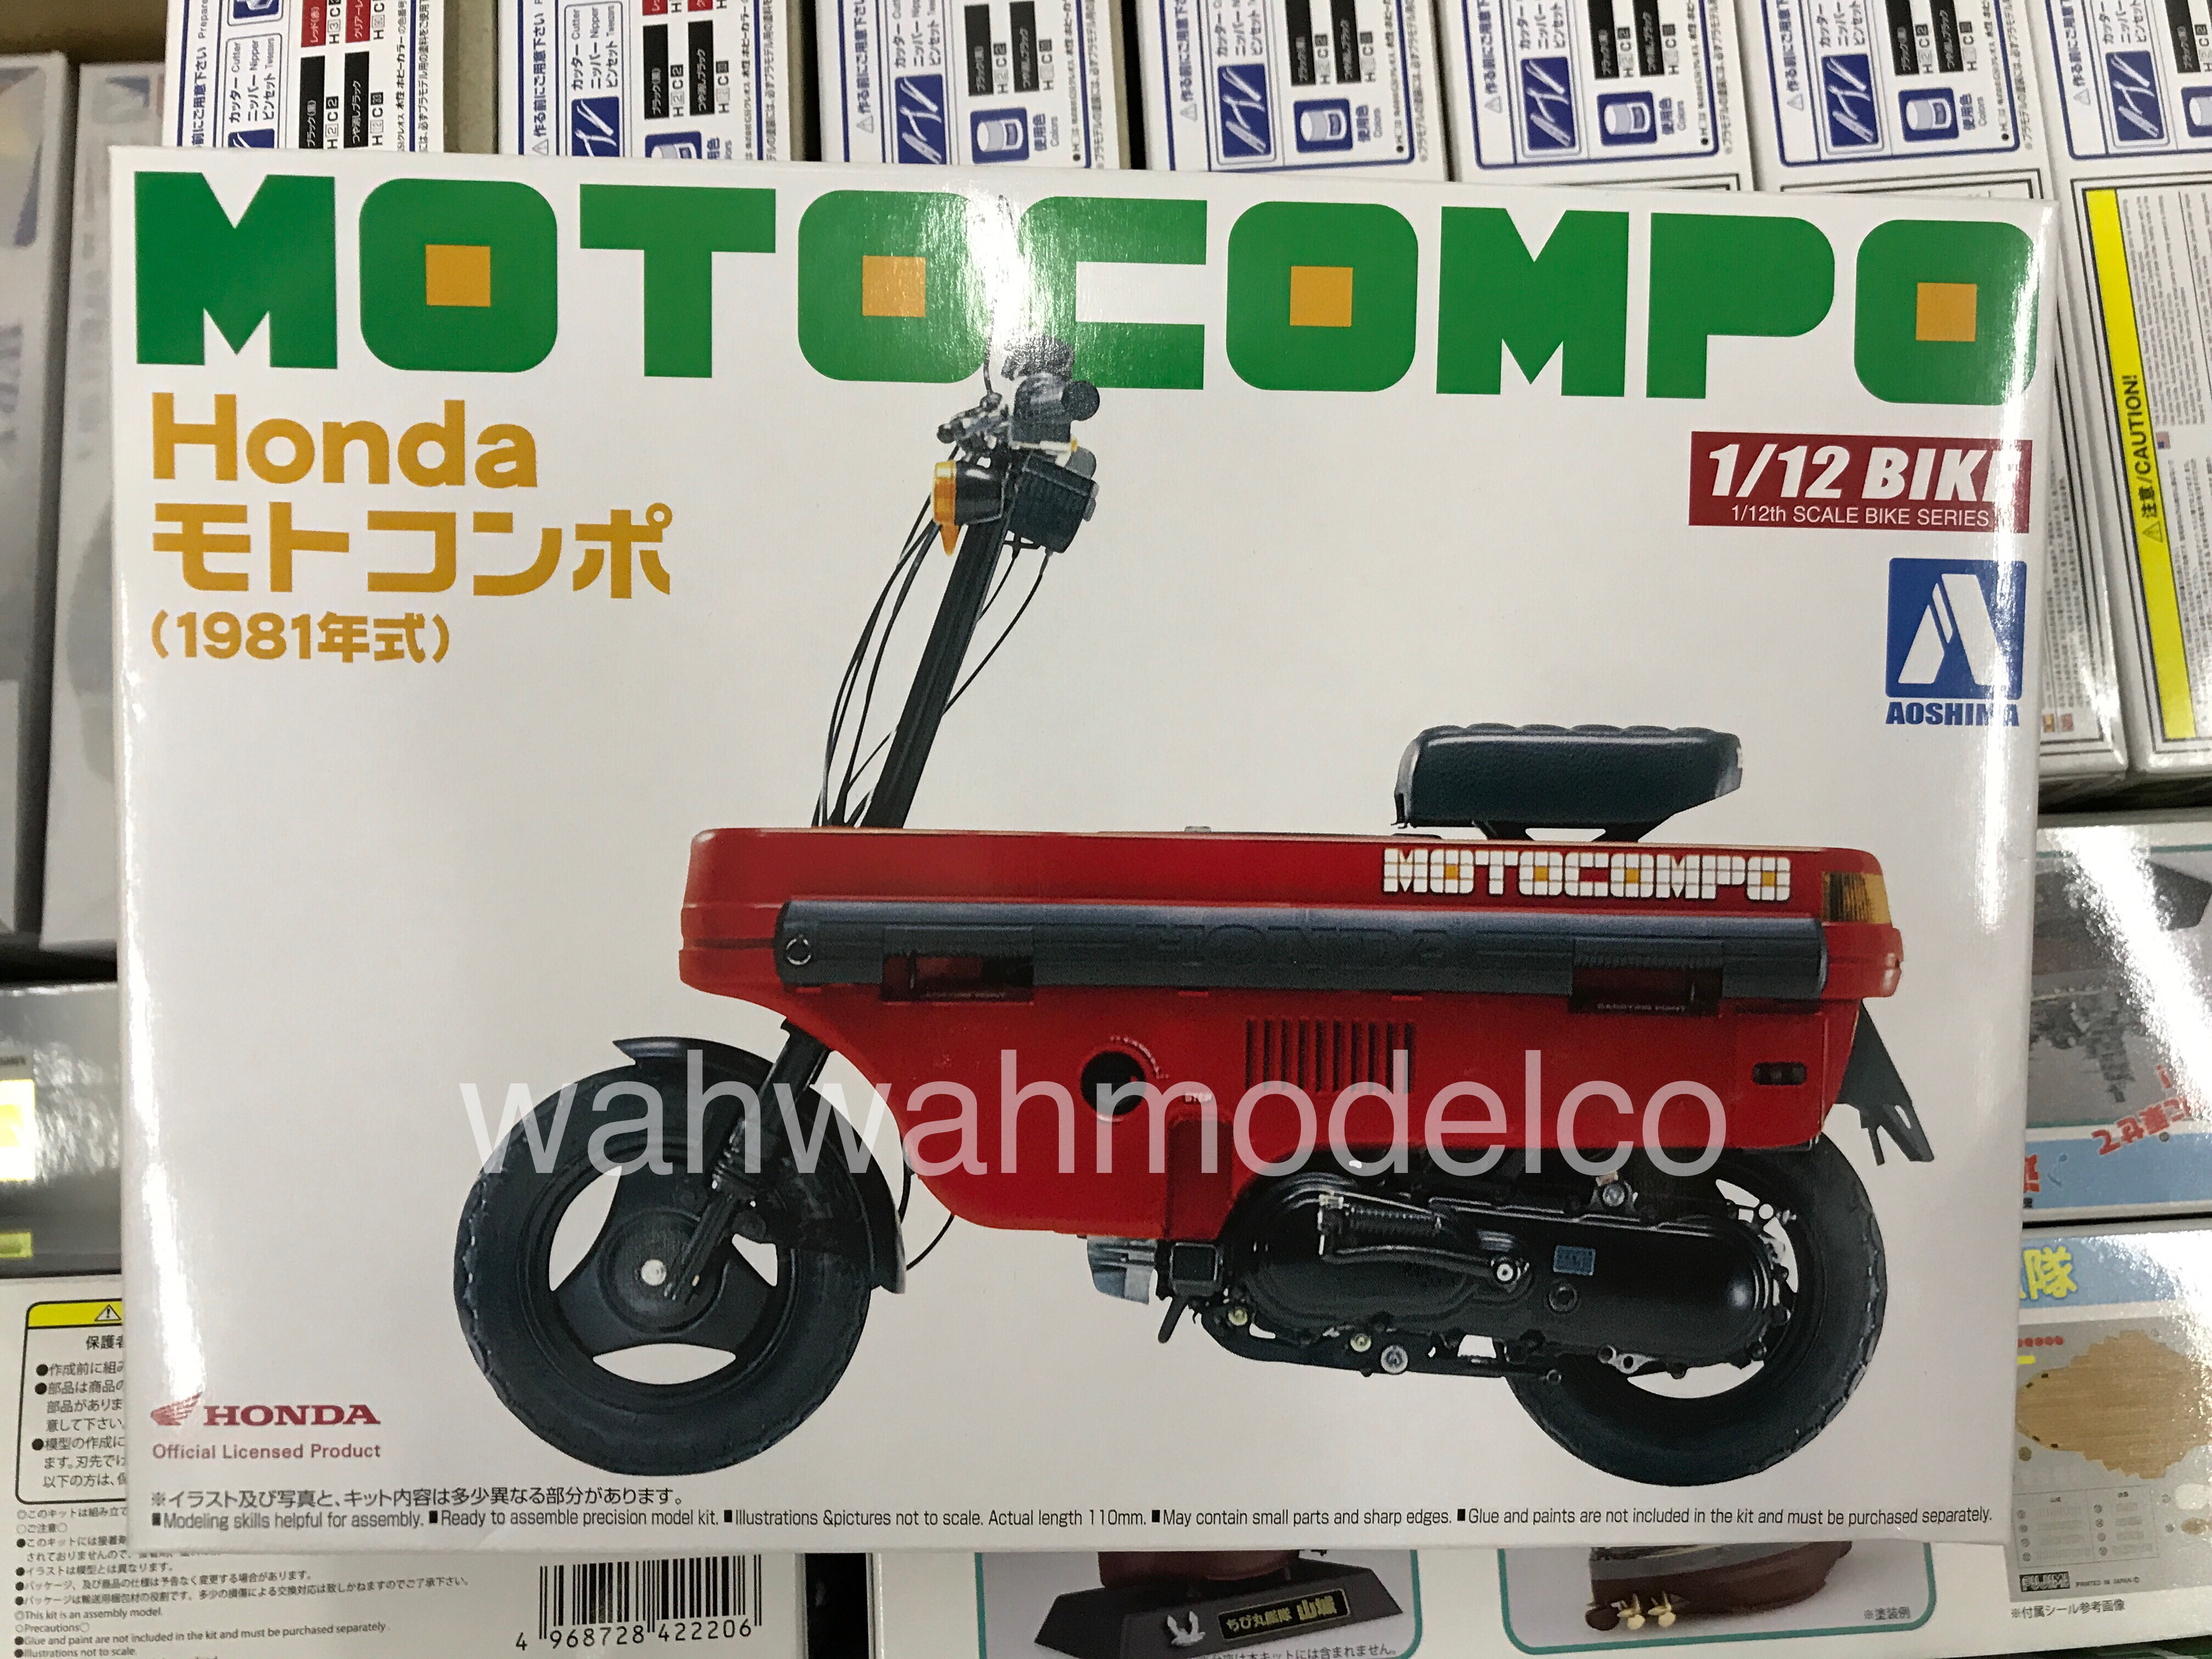 Aoshima 1/12 motorcycle series No.33 Honda motocompo type 1981 model car F/S NEW 